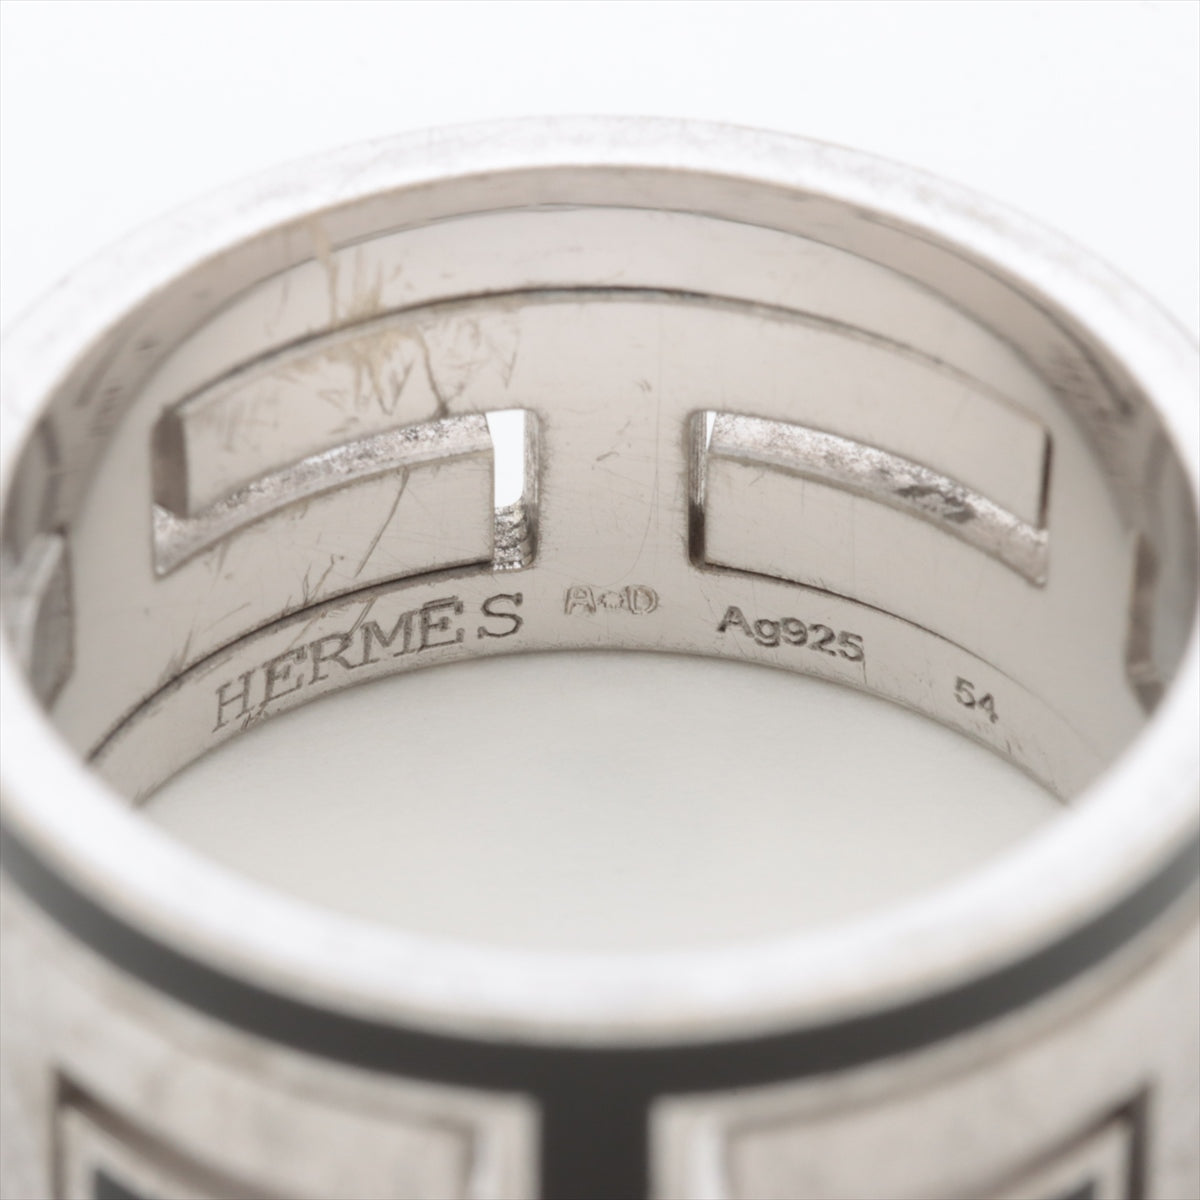 HERMES 指輪 Hリング Ag925 シルバー 表記サイズ52約05トップ